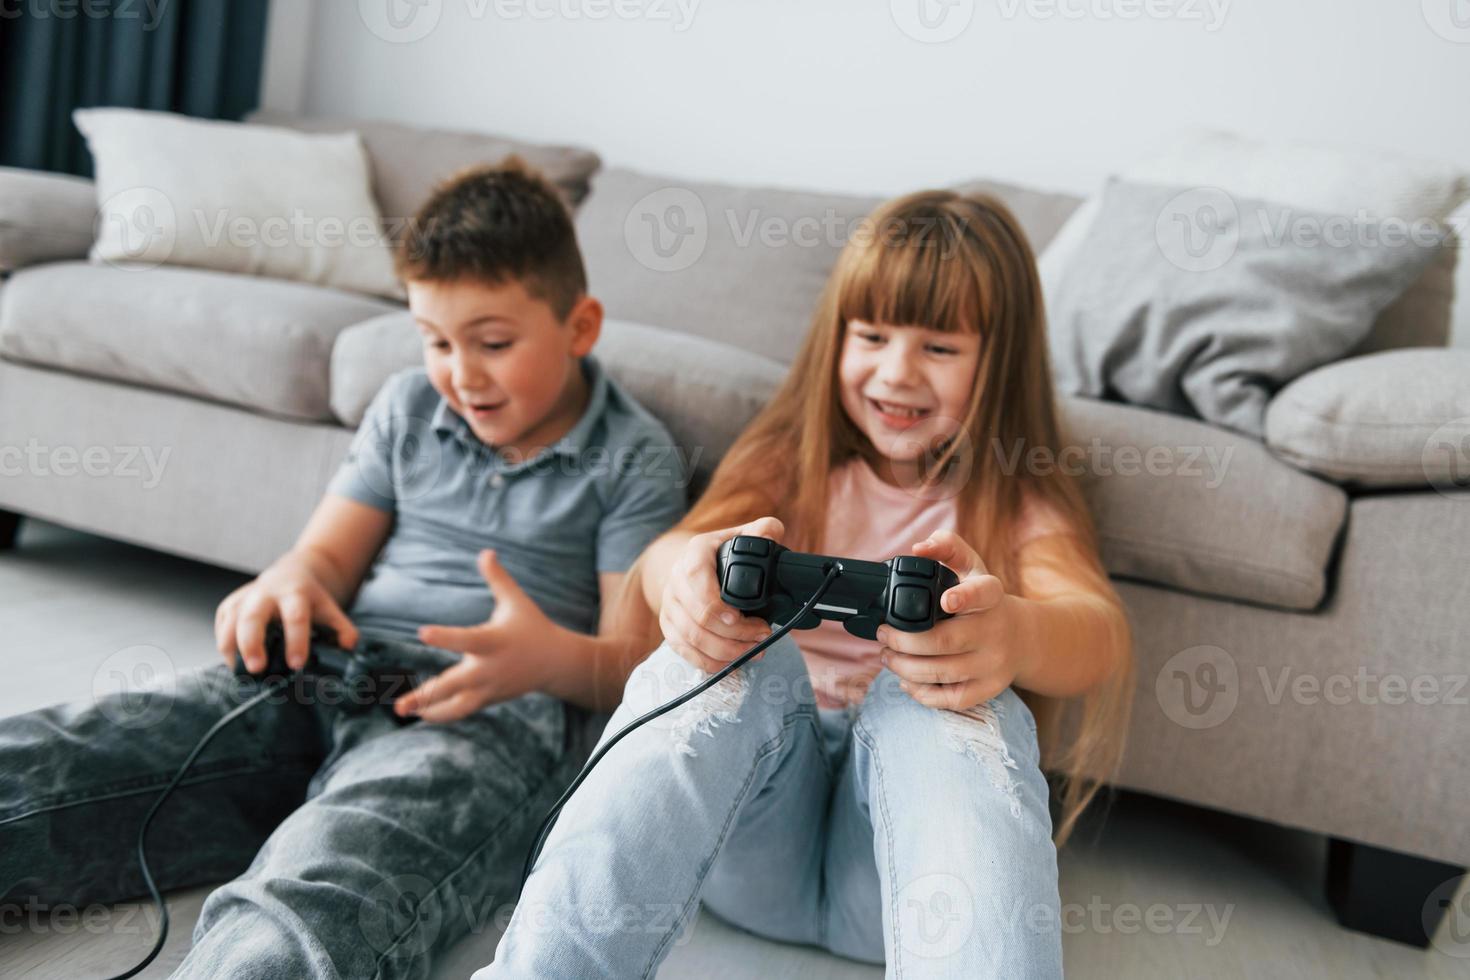 assis par terre et jouant à un jeu vidéo. les enfants s'amusent ensemble dans la chambre domestique pendant la journée photo